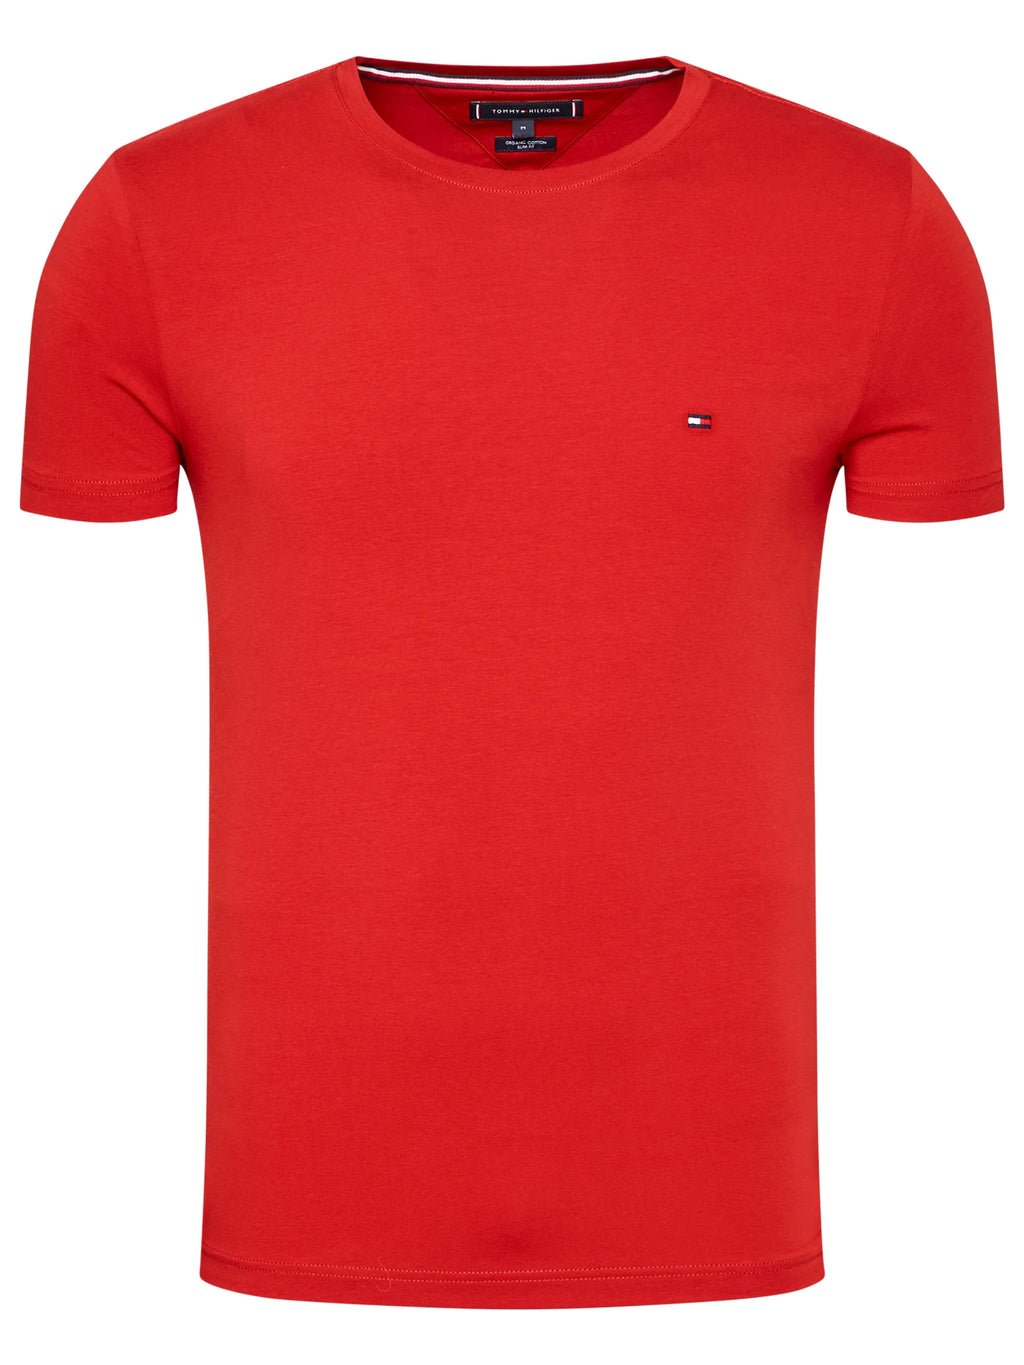 T-Shirt homme Tommy Hilfiger ajusté rouge en coton bio stretch | Georgespaul